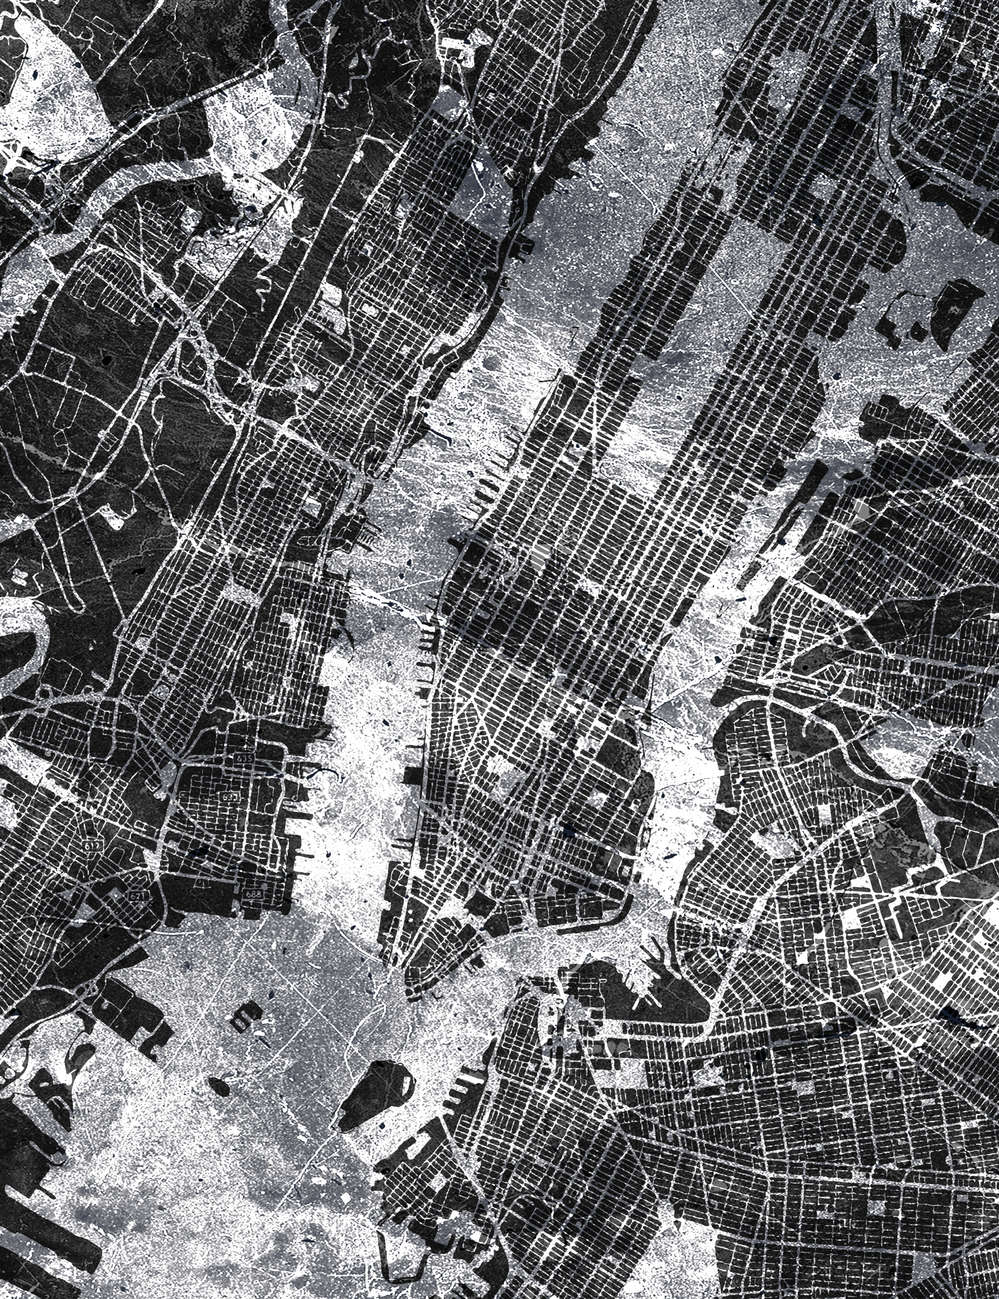             Mapa de la ciudad - Mapa de la ciudad en blanco y negro en estilo rústico
        